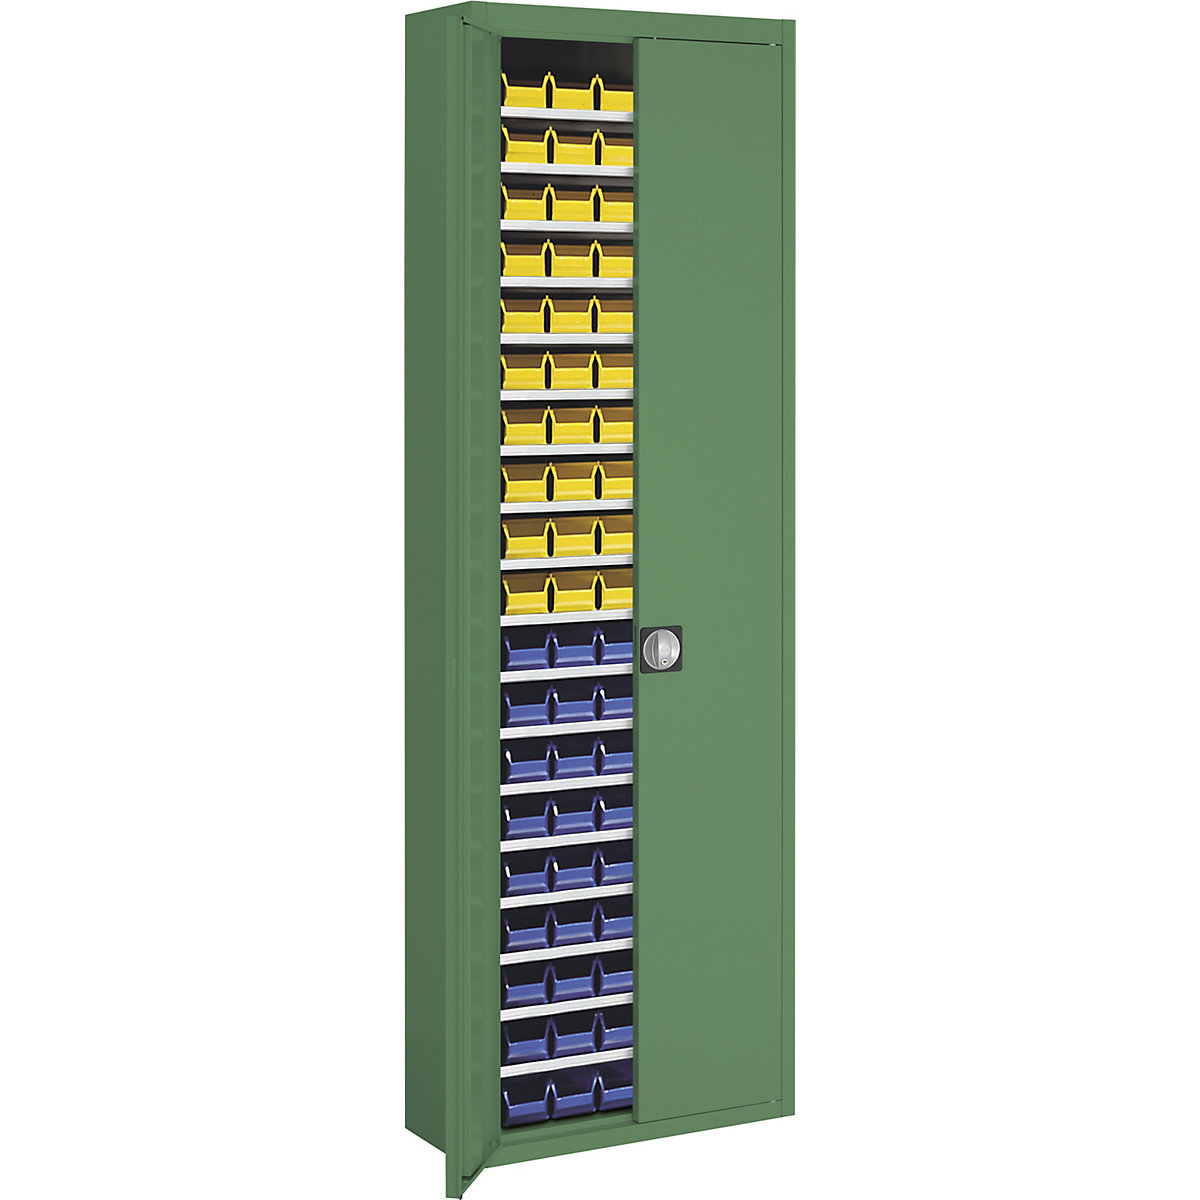 Armário de armazém com caixas de armazenagem à vista – mauser, AxLxP 2150 x 680 x 280 mm, unicolor, verde, 114 caixas-7